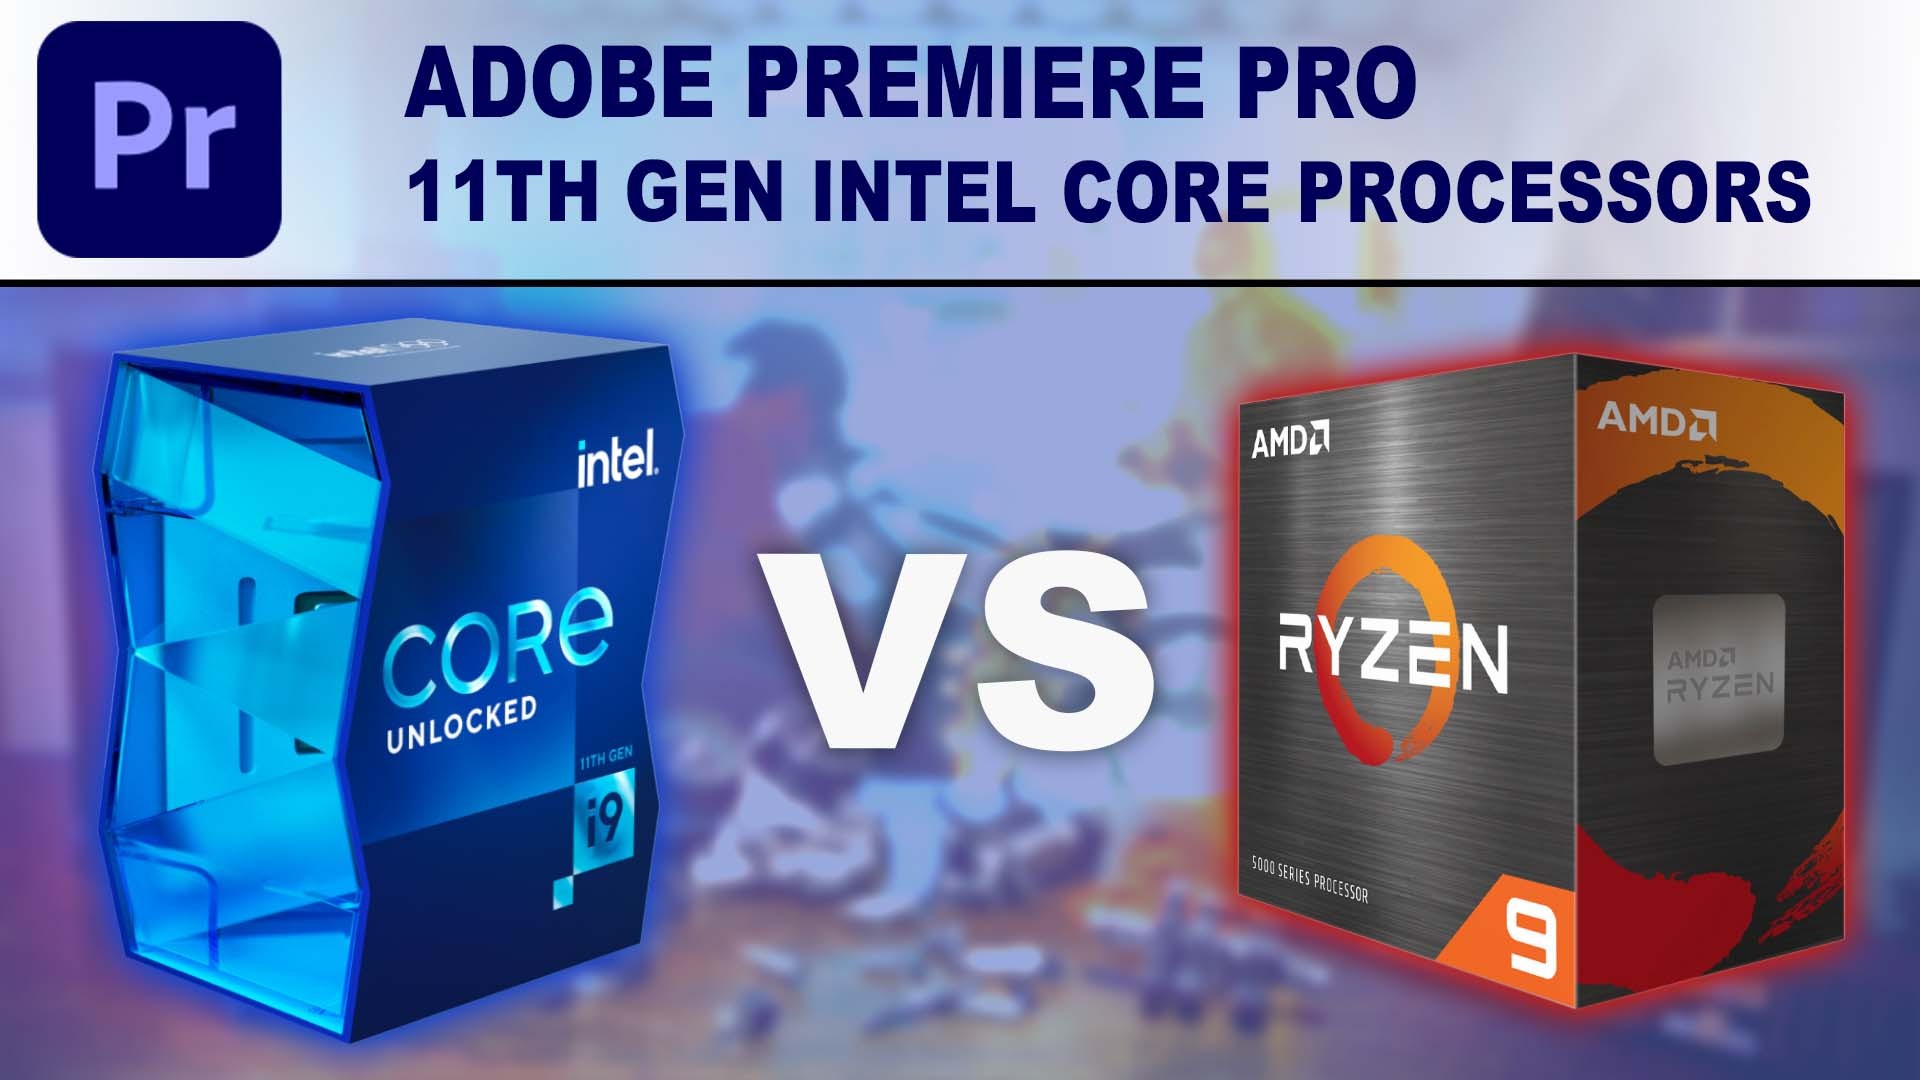 11th Gen Intel Core Processors for Adobe Premiere Pro